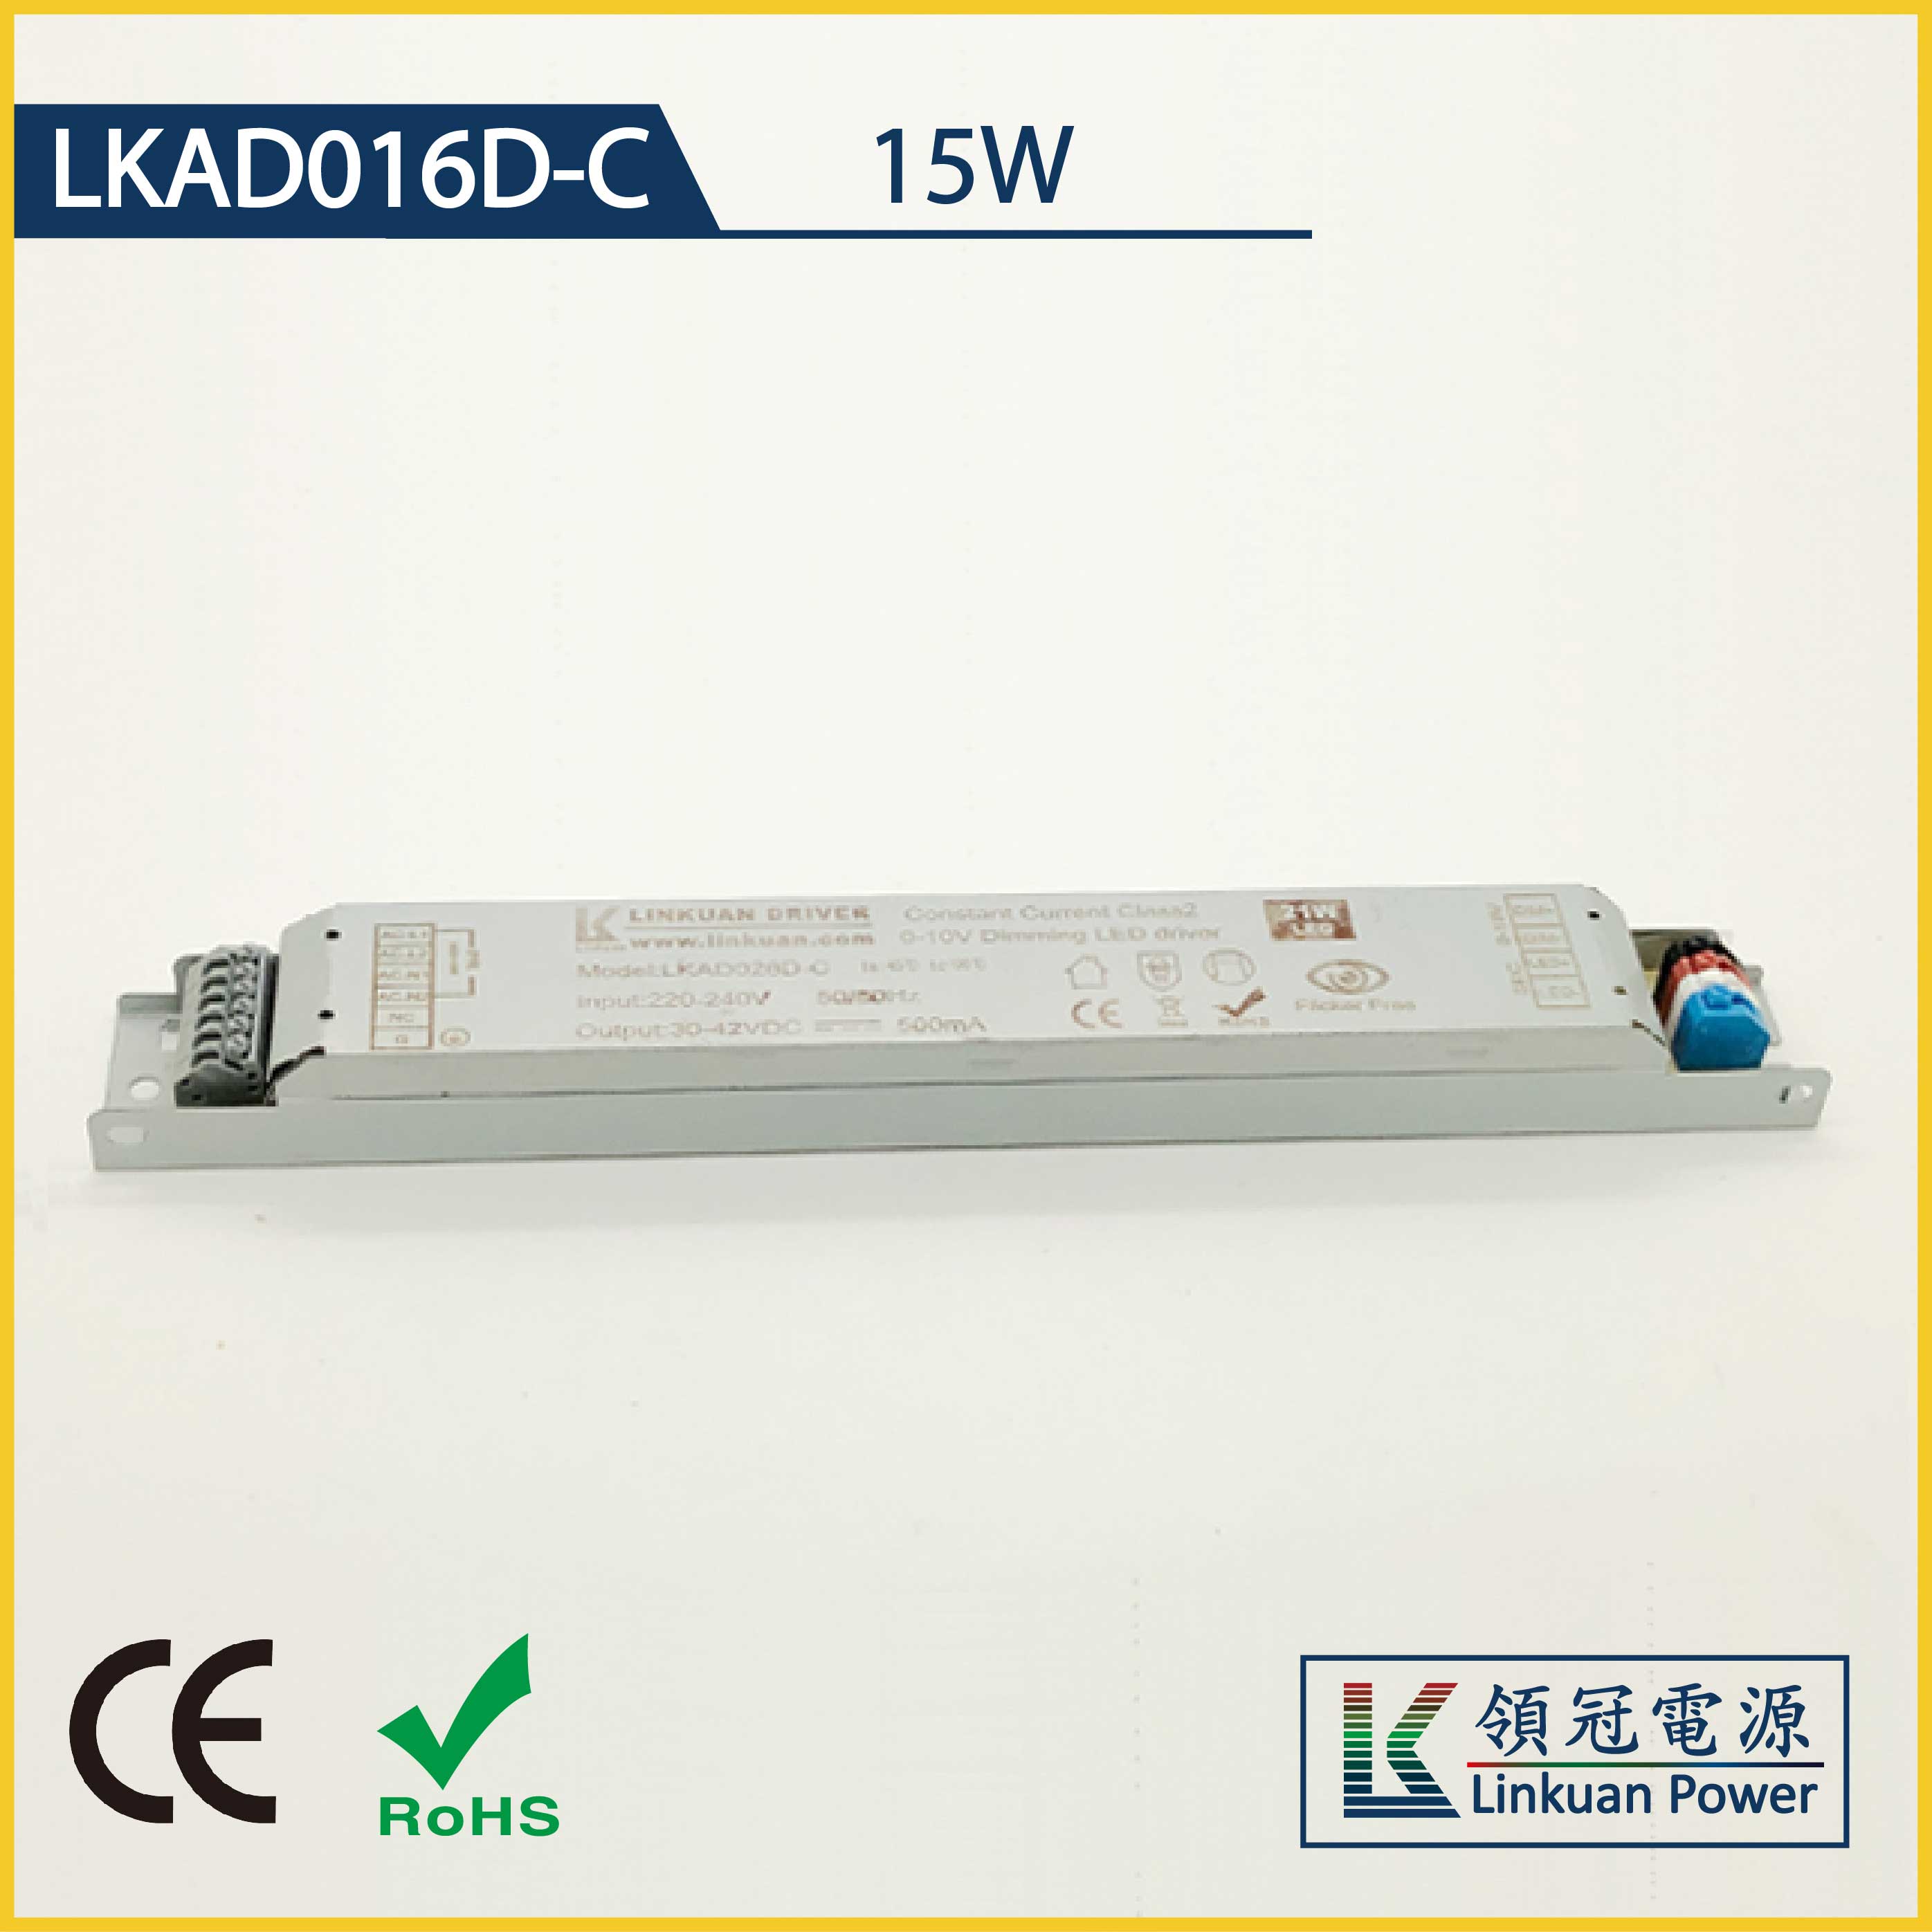 LKAD016D-C 15W 20-45V 350mA Linear Lamp 0-10V dimming  led driver